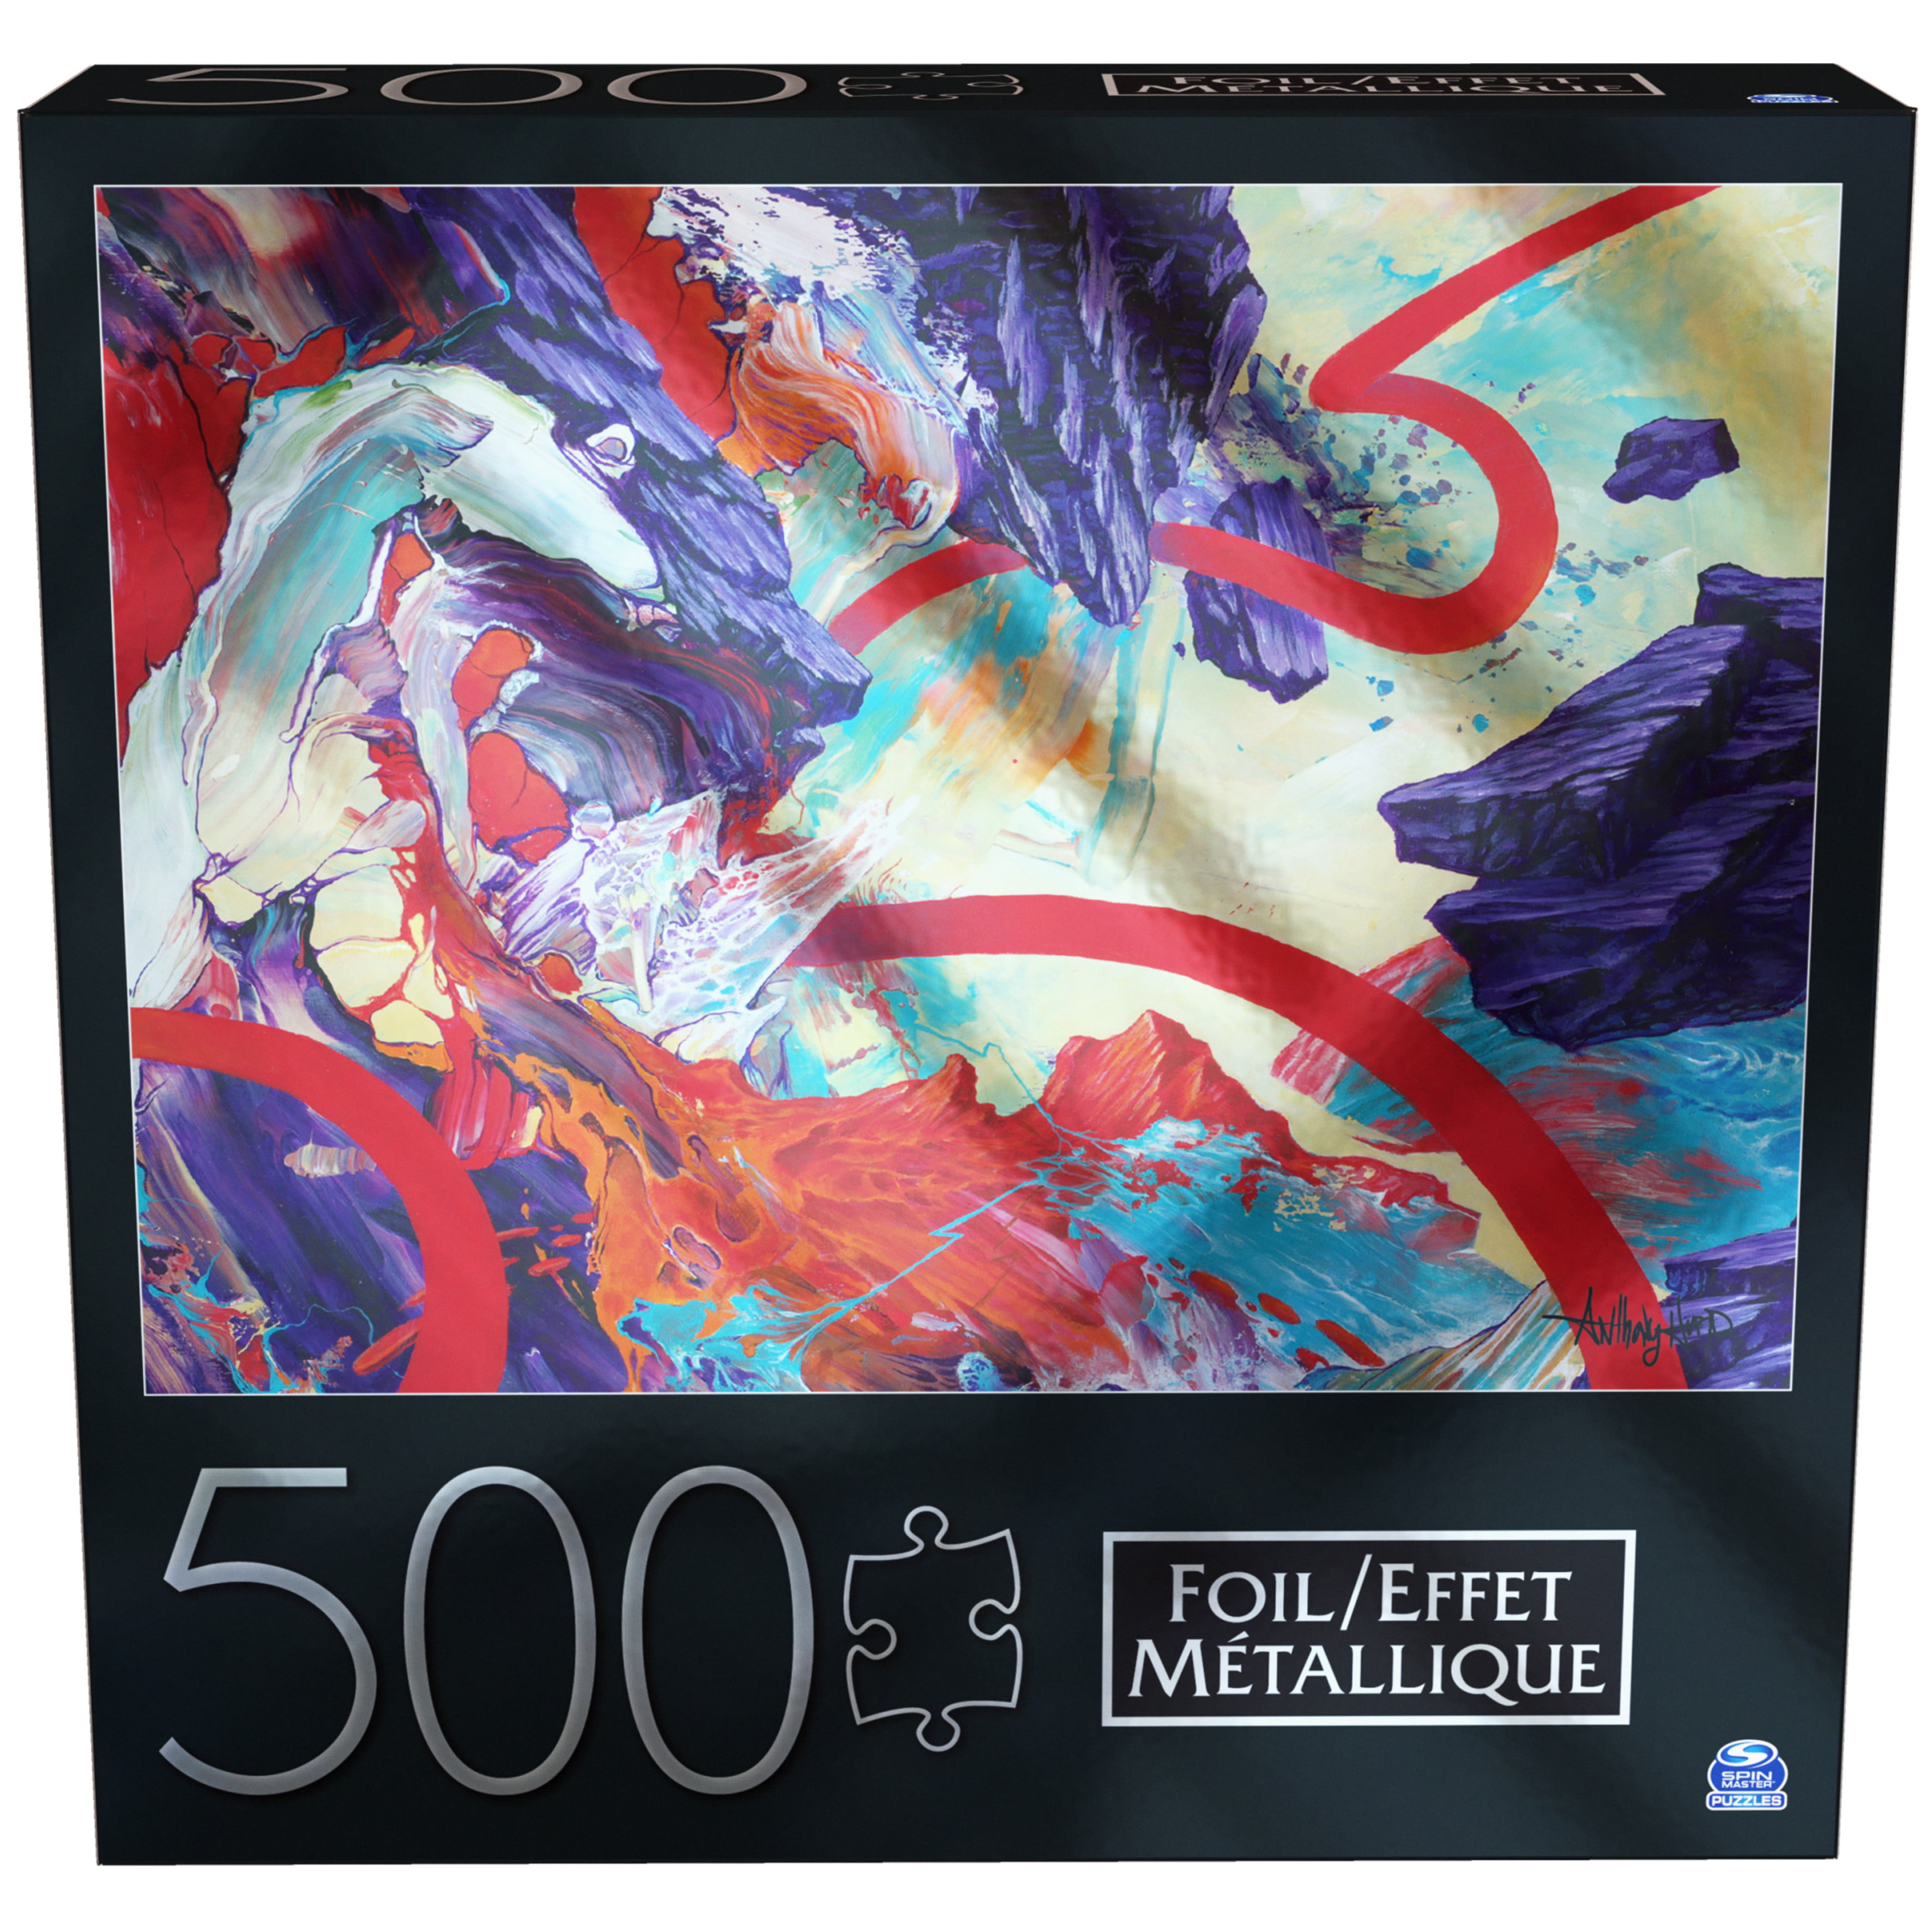 Comprar Guarda Puzzles Art Puzzle, 500-1500 Piezas - Art-Puzzle-905